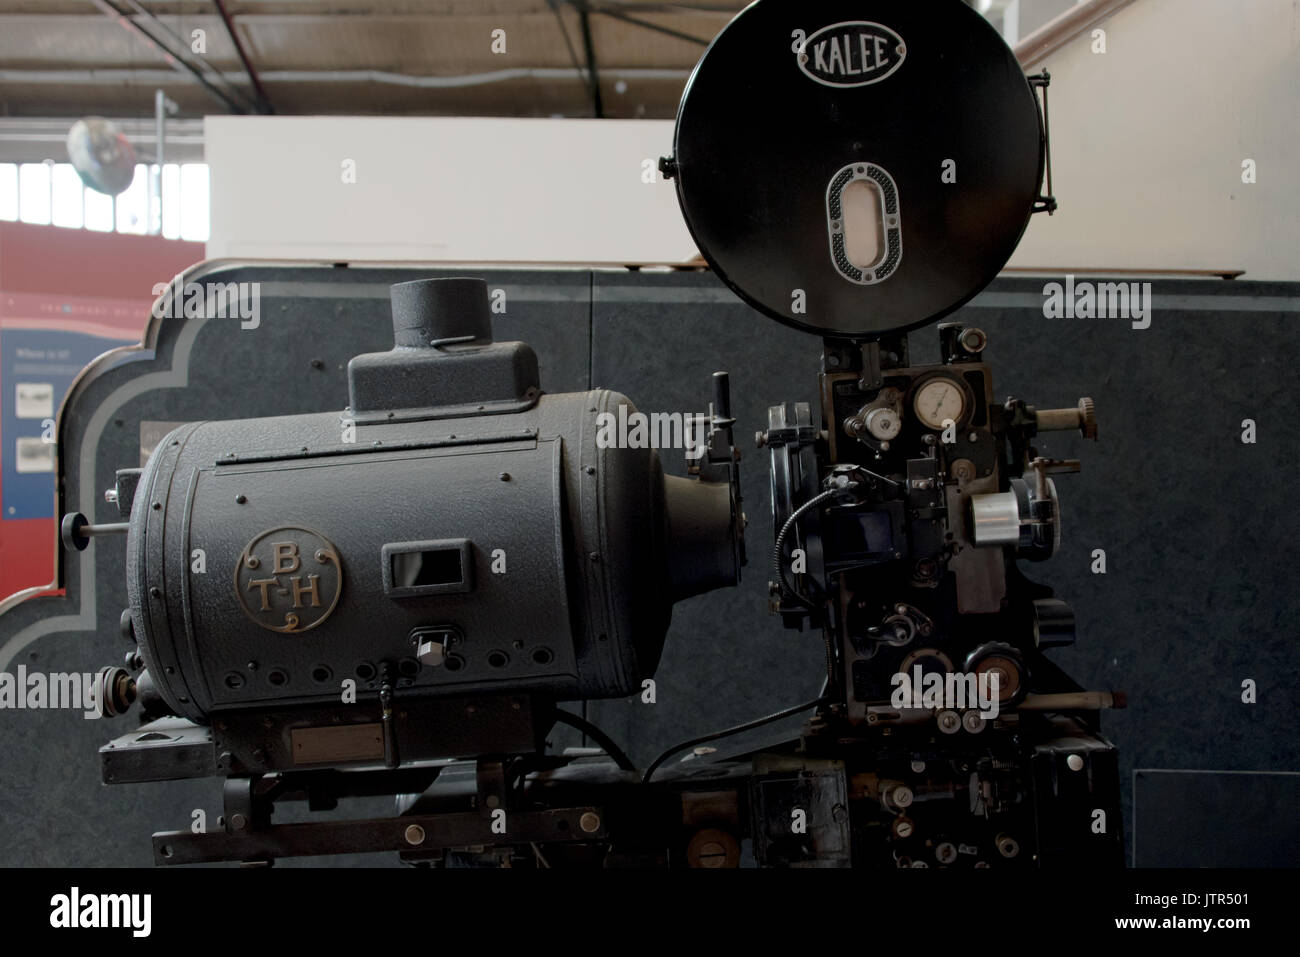 L'kalee onze films 35mm projecteur à l'abbaye de Leicester est la station de pompage, le musée de la science et de la technologie à Leicester Banque D'Images